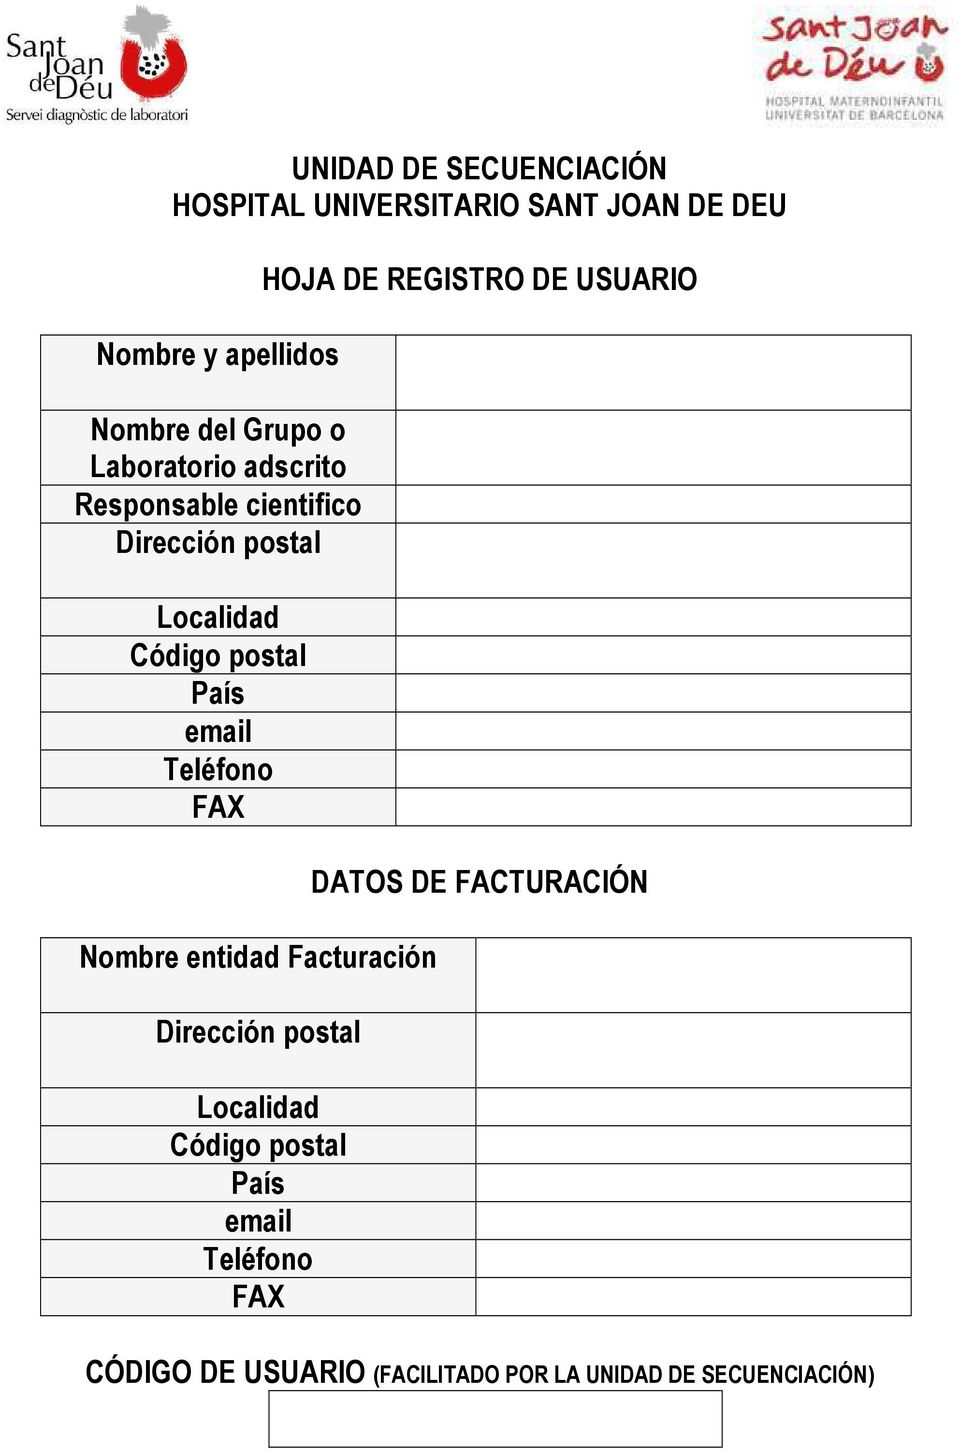 Teléfono FAX Nombre entidad Facturación Dirección postal Localidad Código postal País email Teléfono